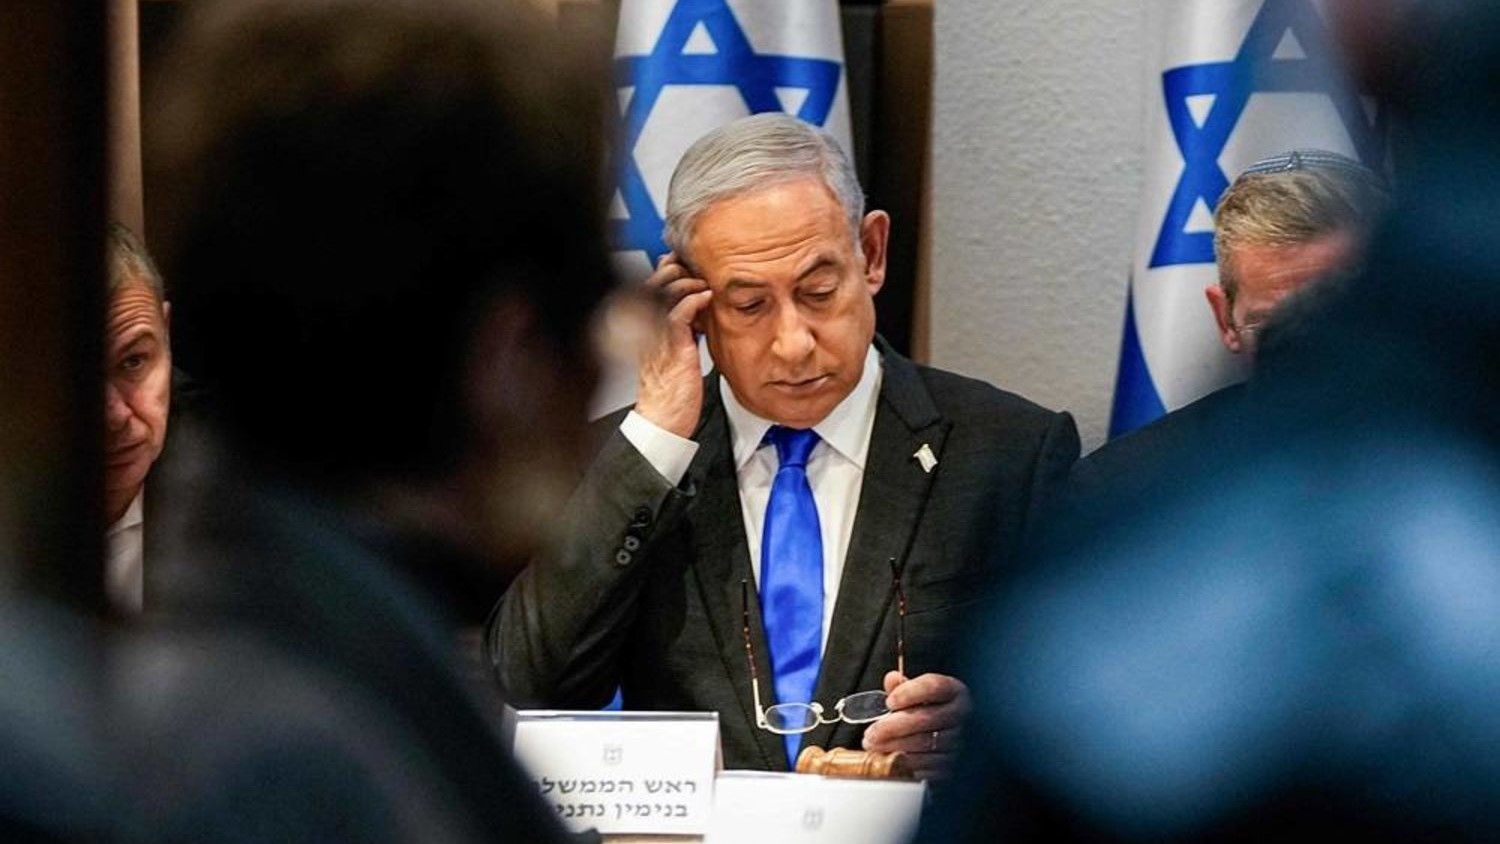 رئيس الوزراء الإسرائيلي بنيامين نتنياهو يترأس اجتماعا لمجلس الوزراء في قاعدة كيريا العسكرية التي تضم وزارة الدفاع الإسرائيلية في تل أبيب في 24 ديسمبر 2023